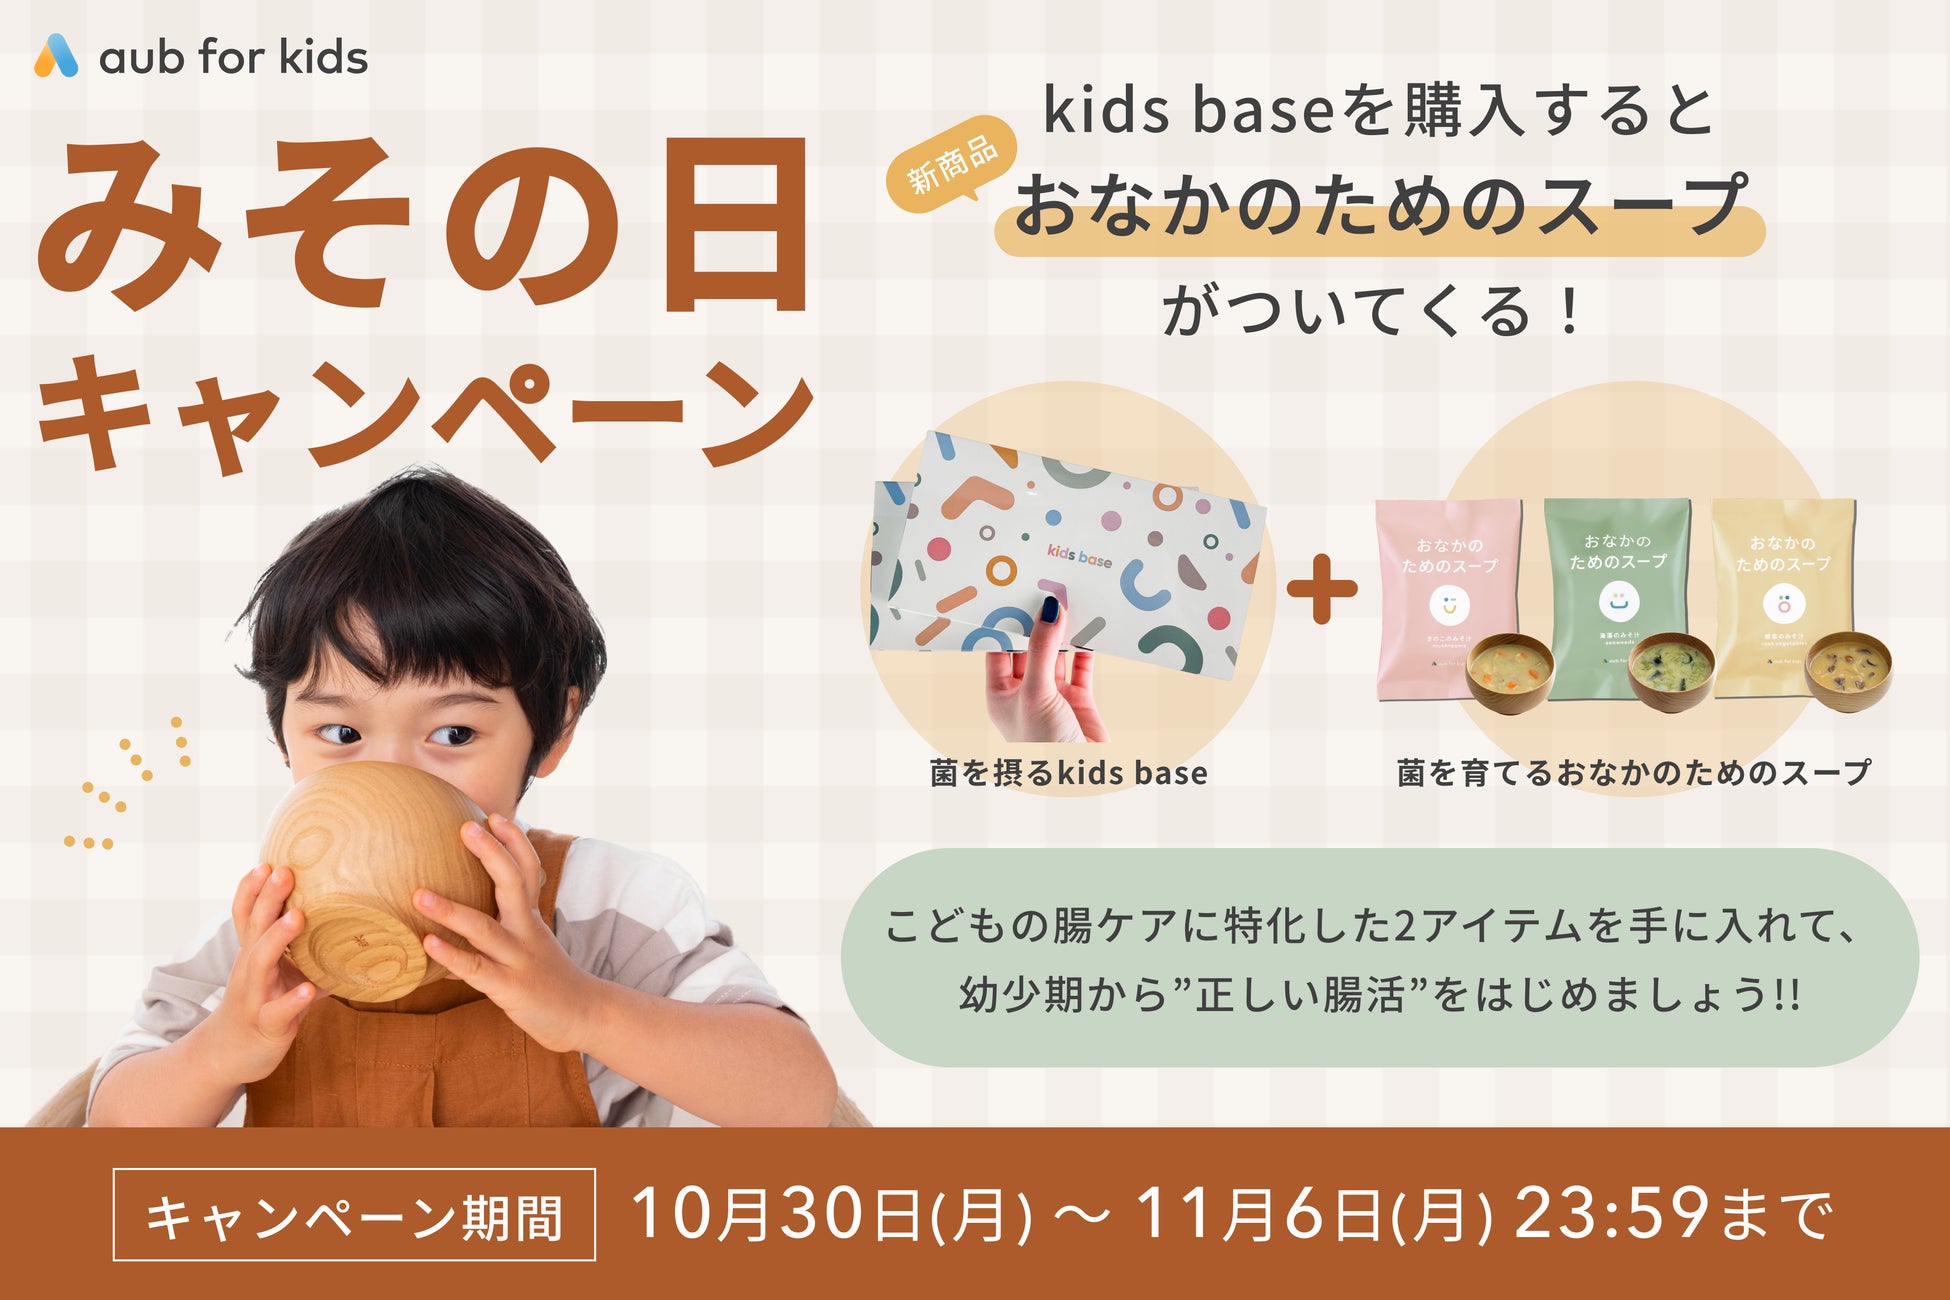 【10月30日はみその日】粉末食品「kids base」購入で、こども向けフリーズドライみそ汁「おなかのためのスープ」が無料でついてくる！aub for kids「みその日」キャンペーン開催！